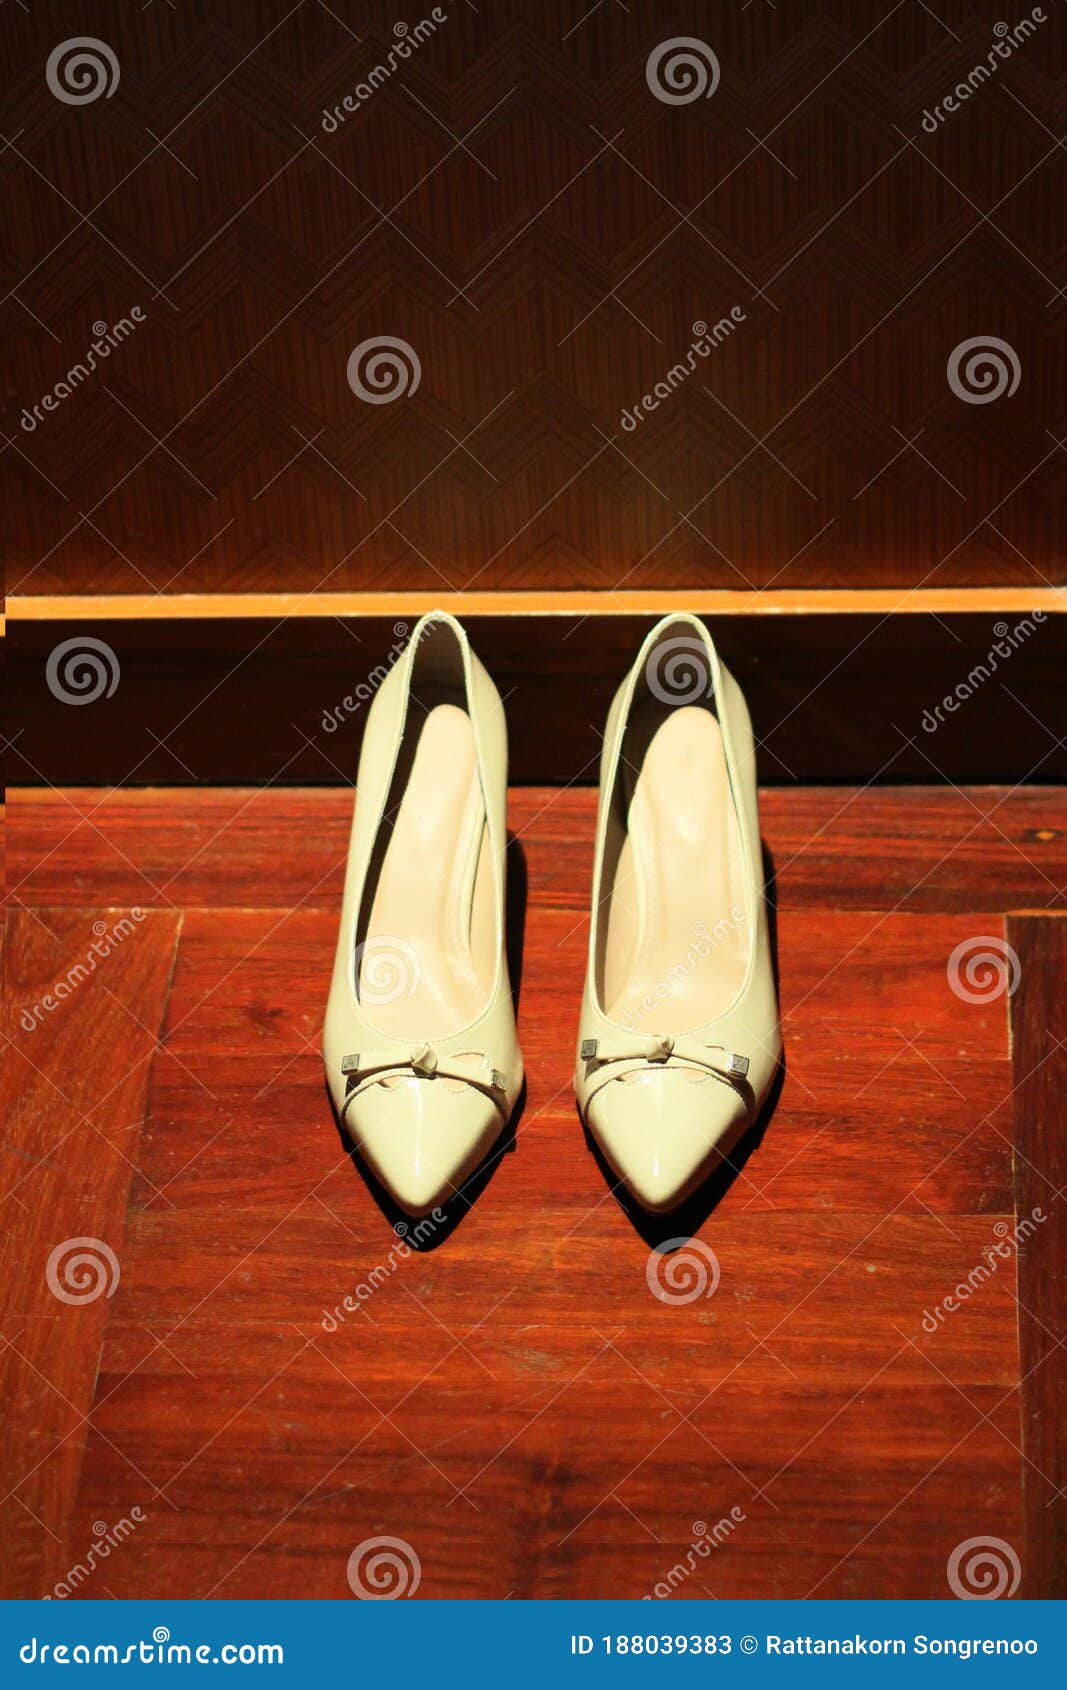 Calzado Blanco Para Mujeres Con Tacones Altos Gruesos Moda Mujeres Zapatos Piso De Madera Imagen de archivo - Imagen de ropa, calidad: 188039383